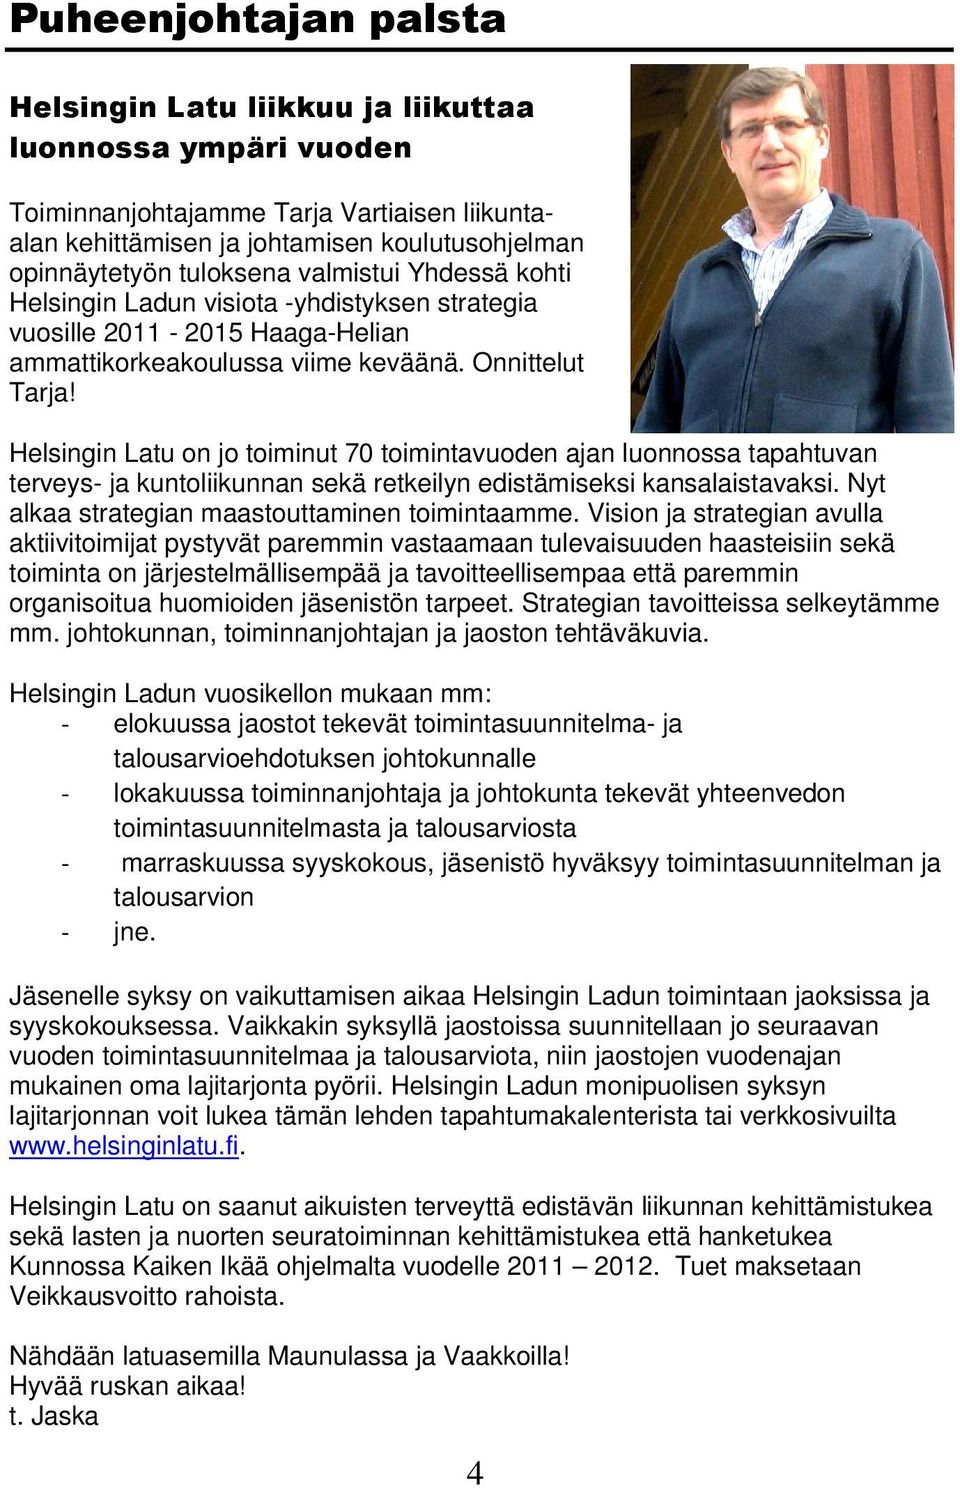 Helsingin Latu on jo toiminut 70 toimintavuoden ajan luonnossa tapahtuvan terveys- ja kuntoliikunnan sekä retkeilyn edistämiseksi kansalaistavaksi. Nyt alkaa strategian maastouttaminen toimintaamme.